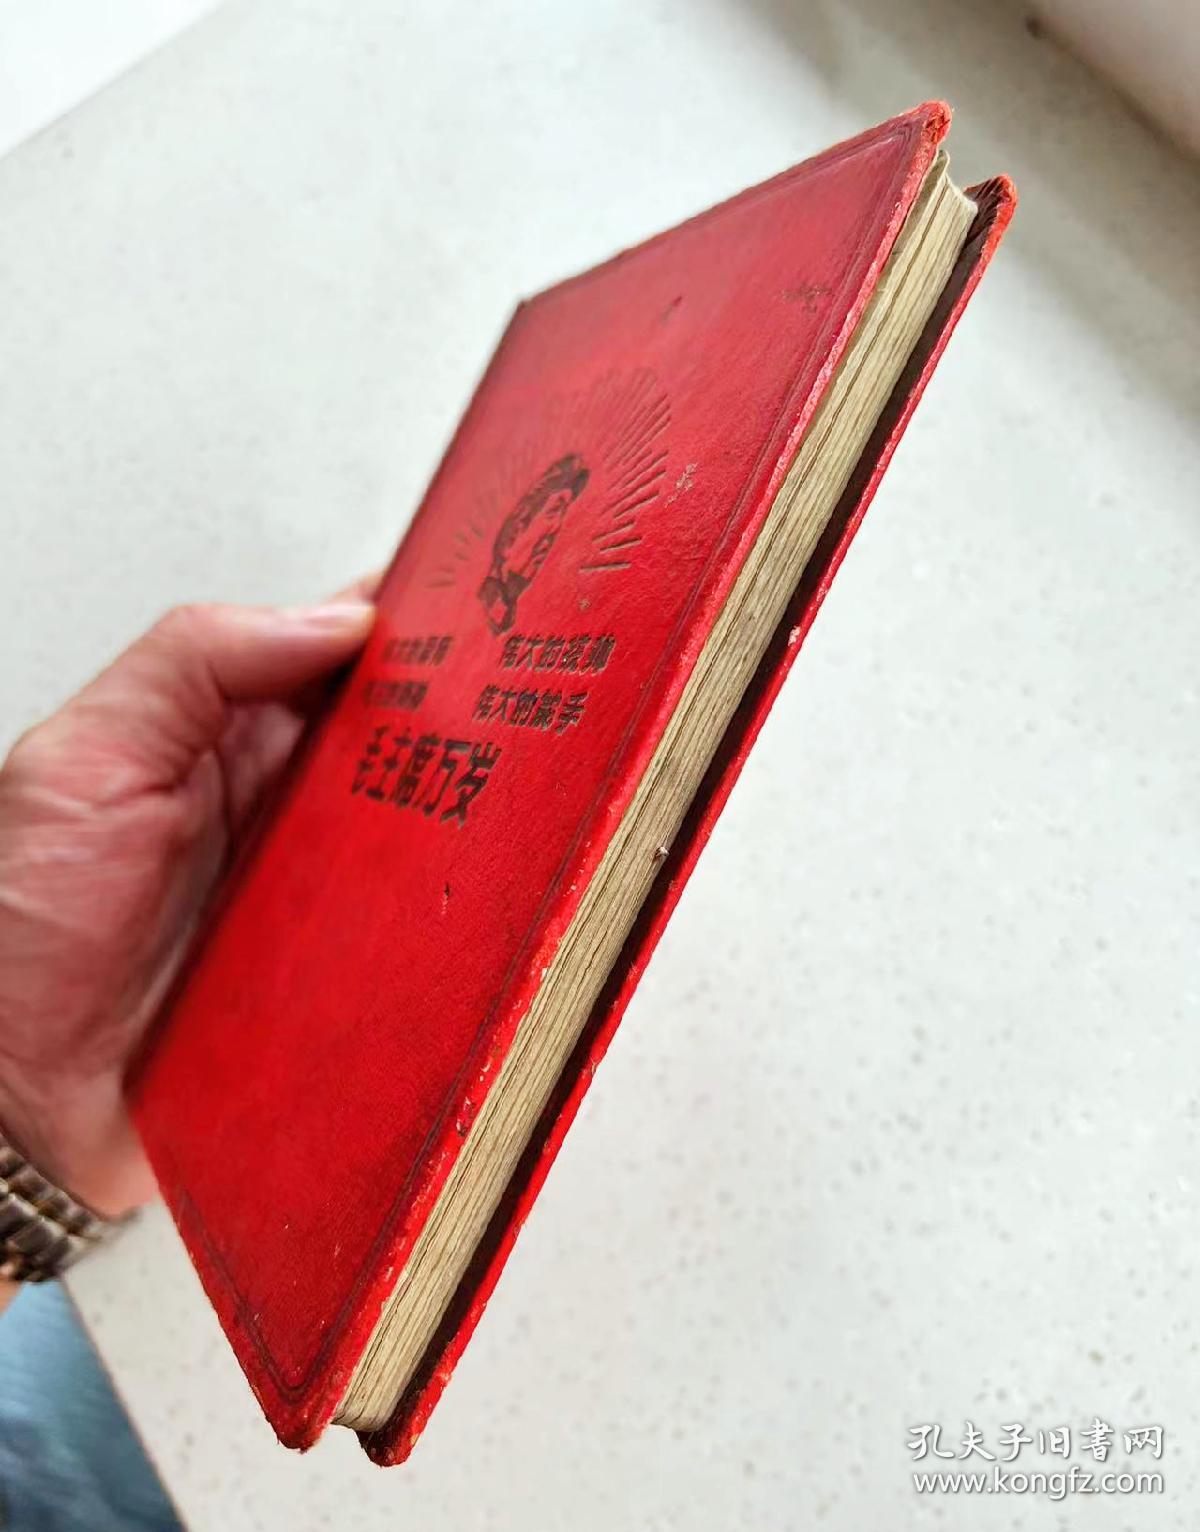 1969年日记本 有毛主席头像，林＊题词: 伟大的导师，伟大的统帅...红色时代色彩浓厚，尺寸:36开 品相完美！